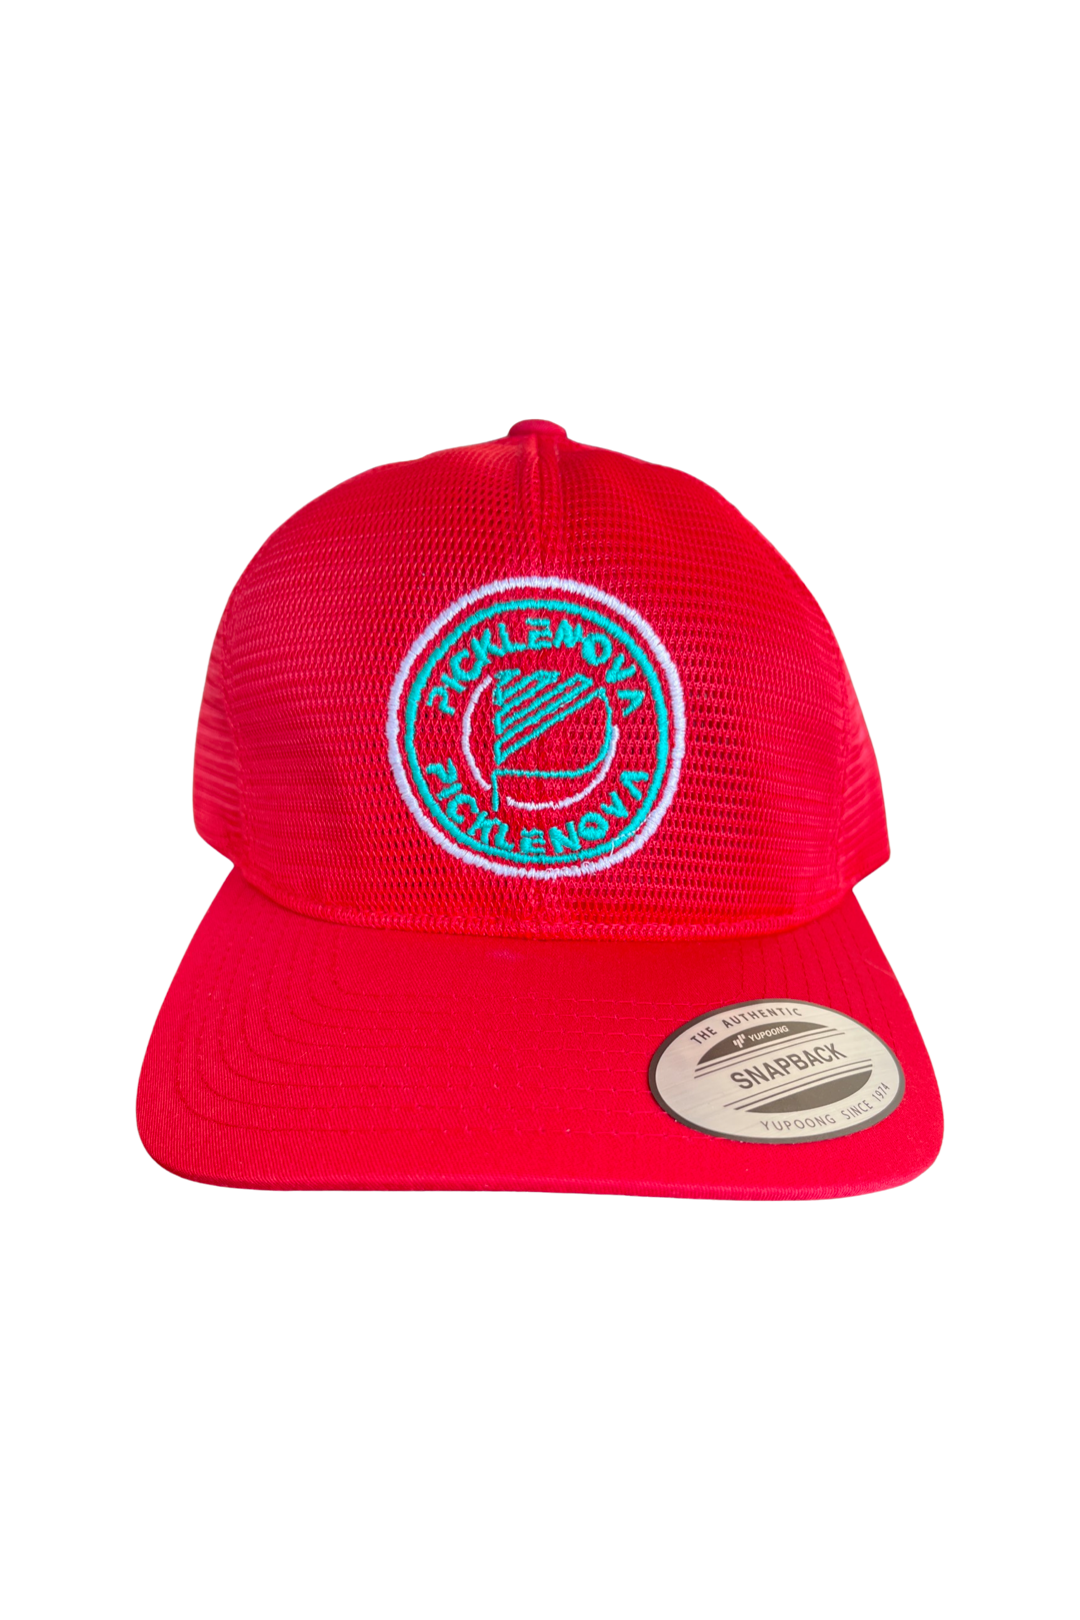 Nova 1.0 PickleNova Snapback Hat - Red